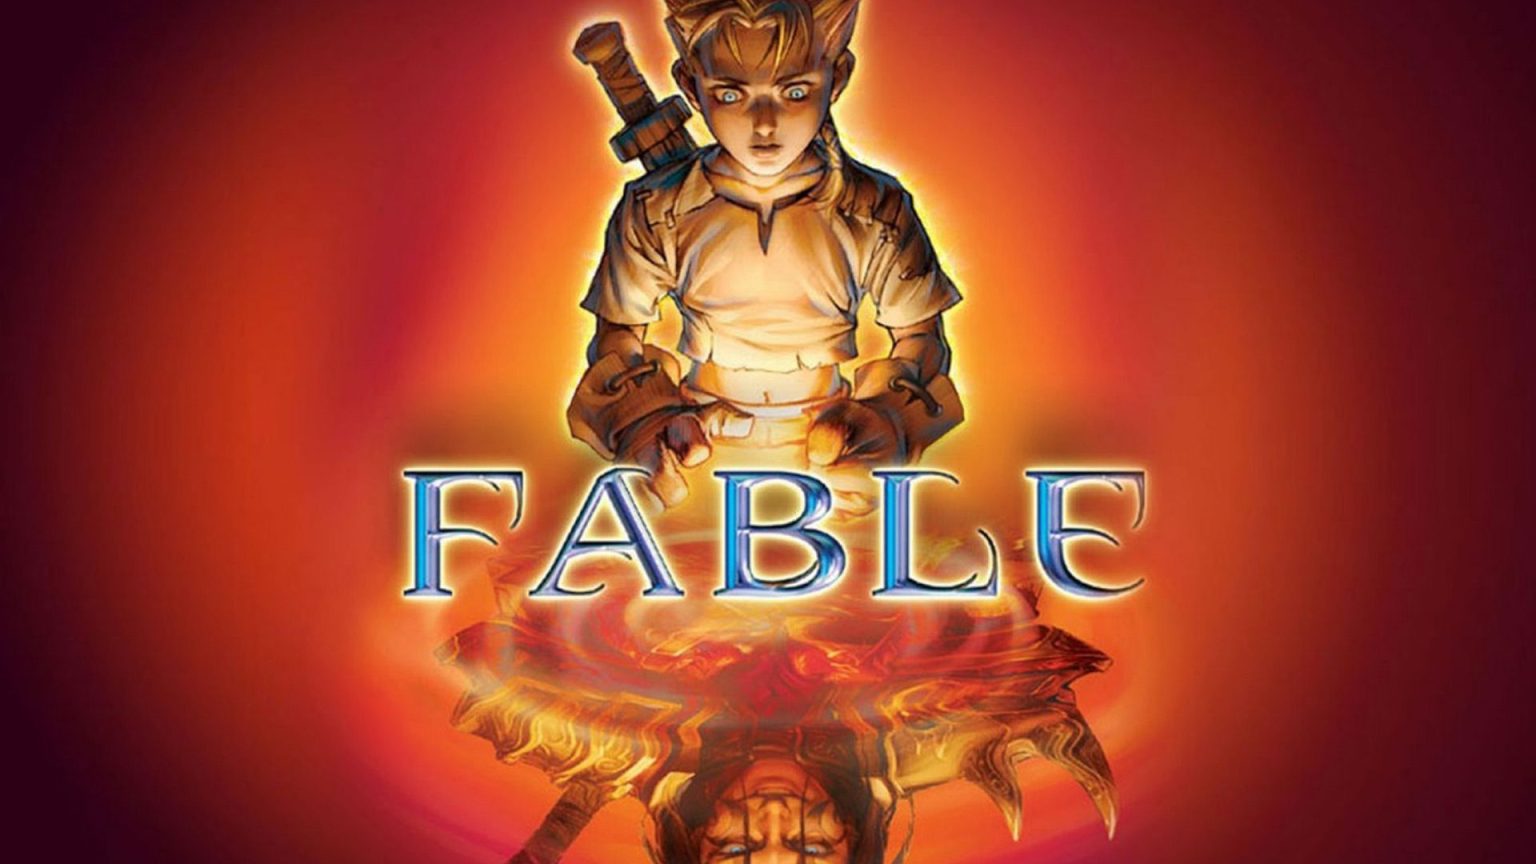 Si eres fan de Fable y quieres ampliar tu experiencia, no te pierdas este mod para el juego original con contenido adicional.